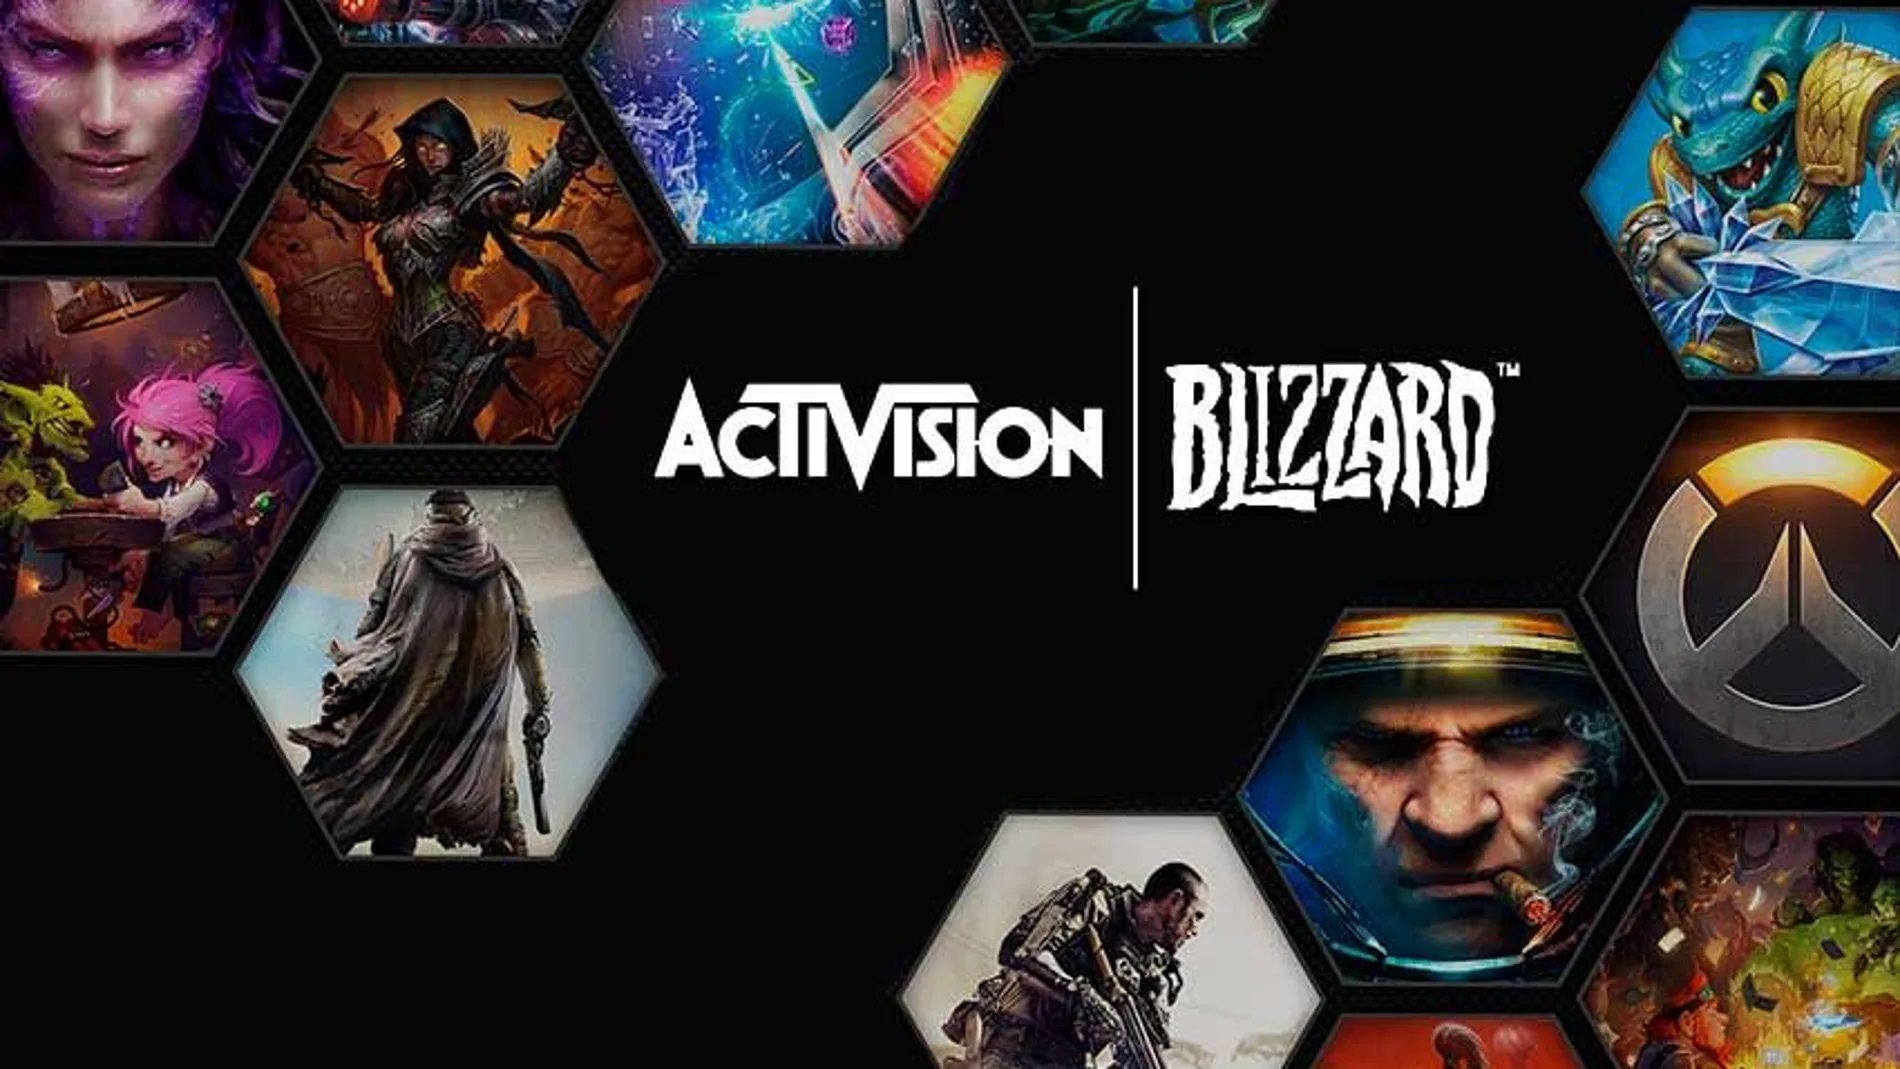 Los usuarios de PlayStation, preocupados por el futuro de las franquicias de Activison en su plataforma tras la adquisición de Microsoft.